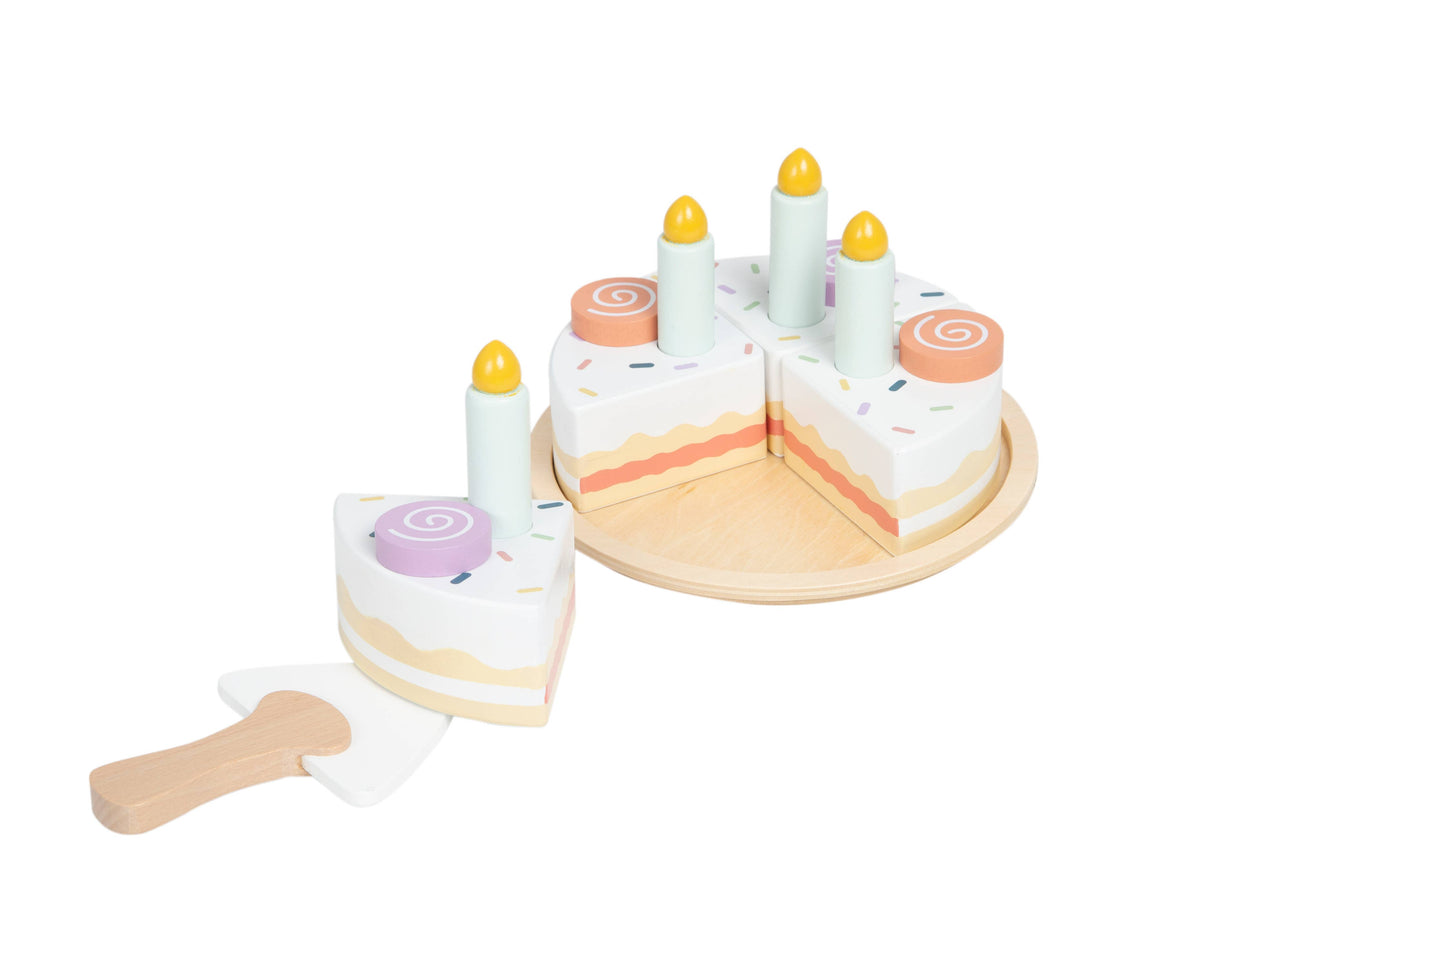 Celebration Wooden Cake Toy Set